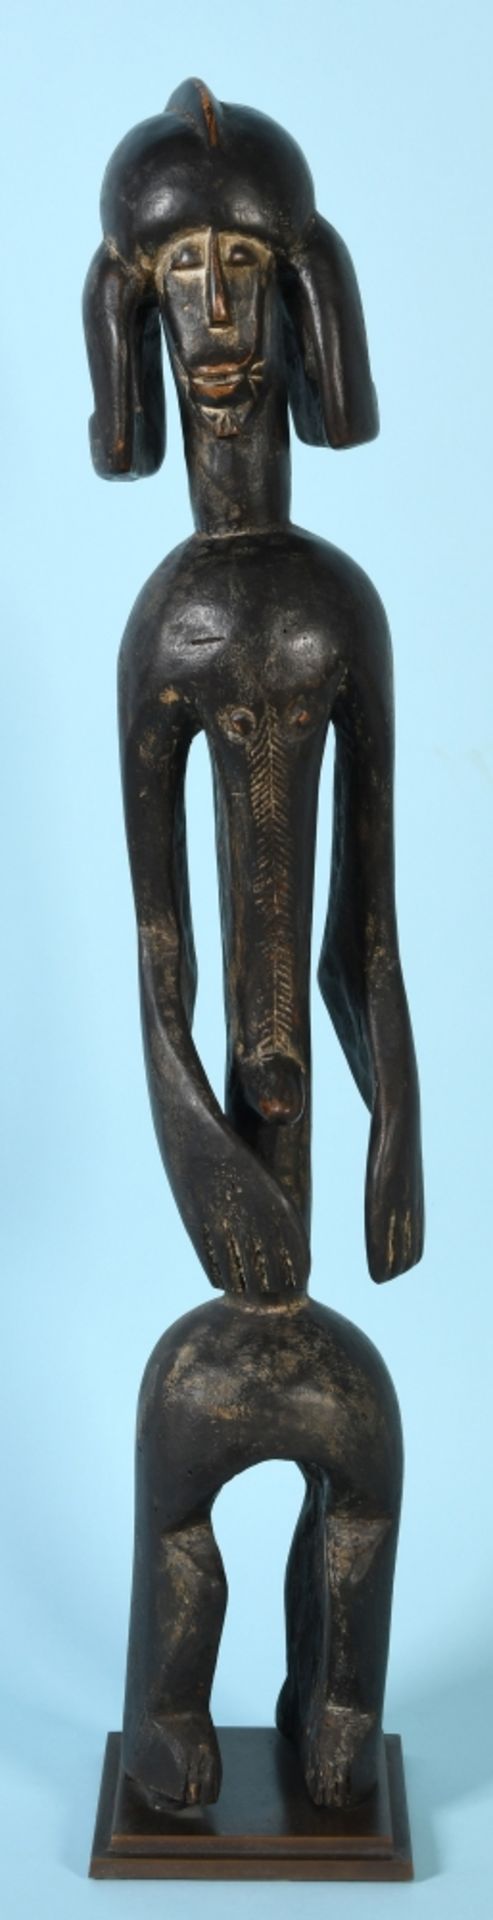 Afrikanische Kultfigur - Ahnenfigur der Mumuye